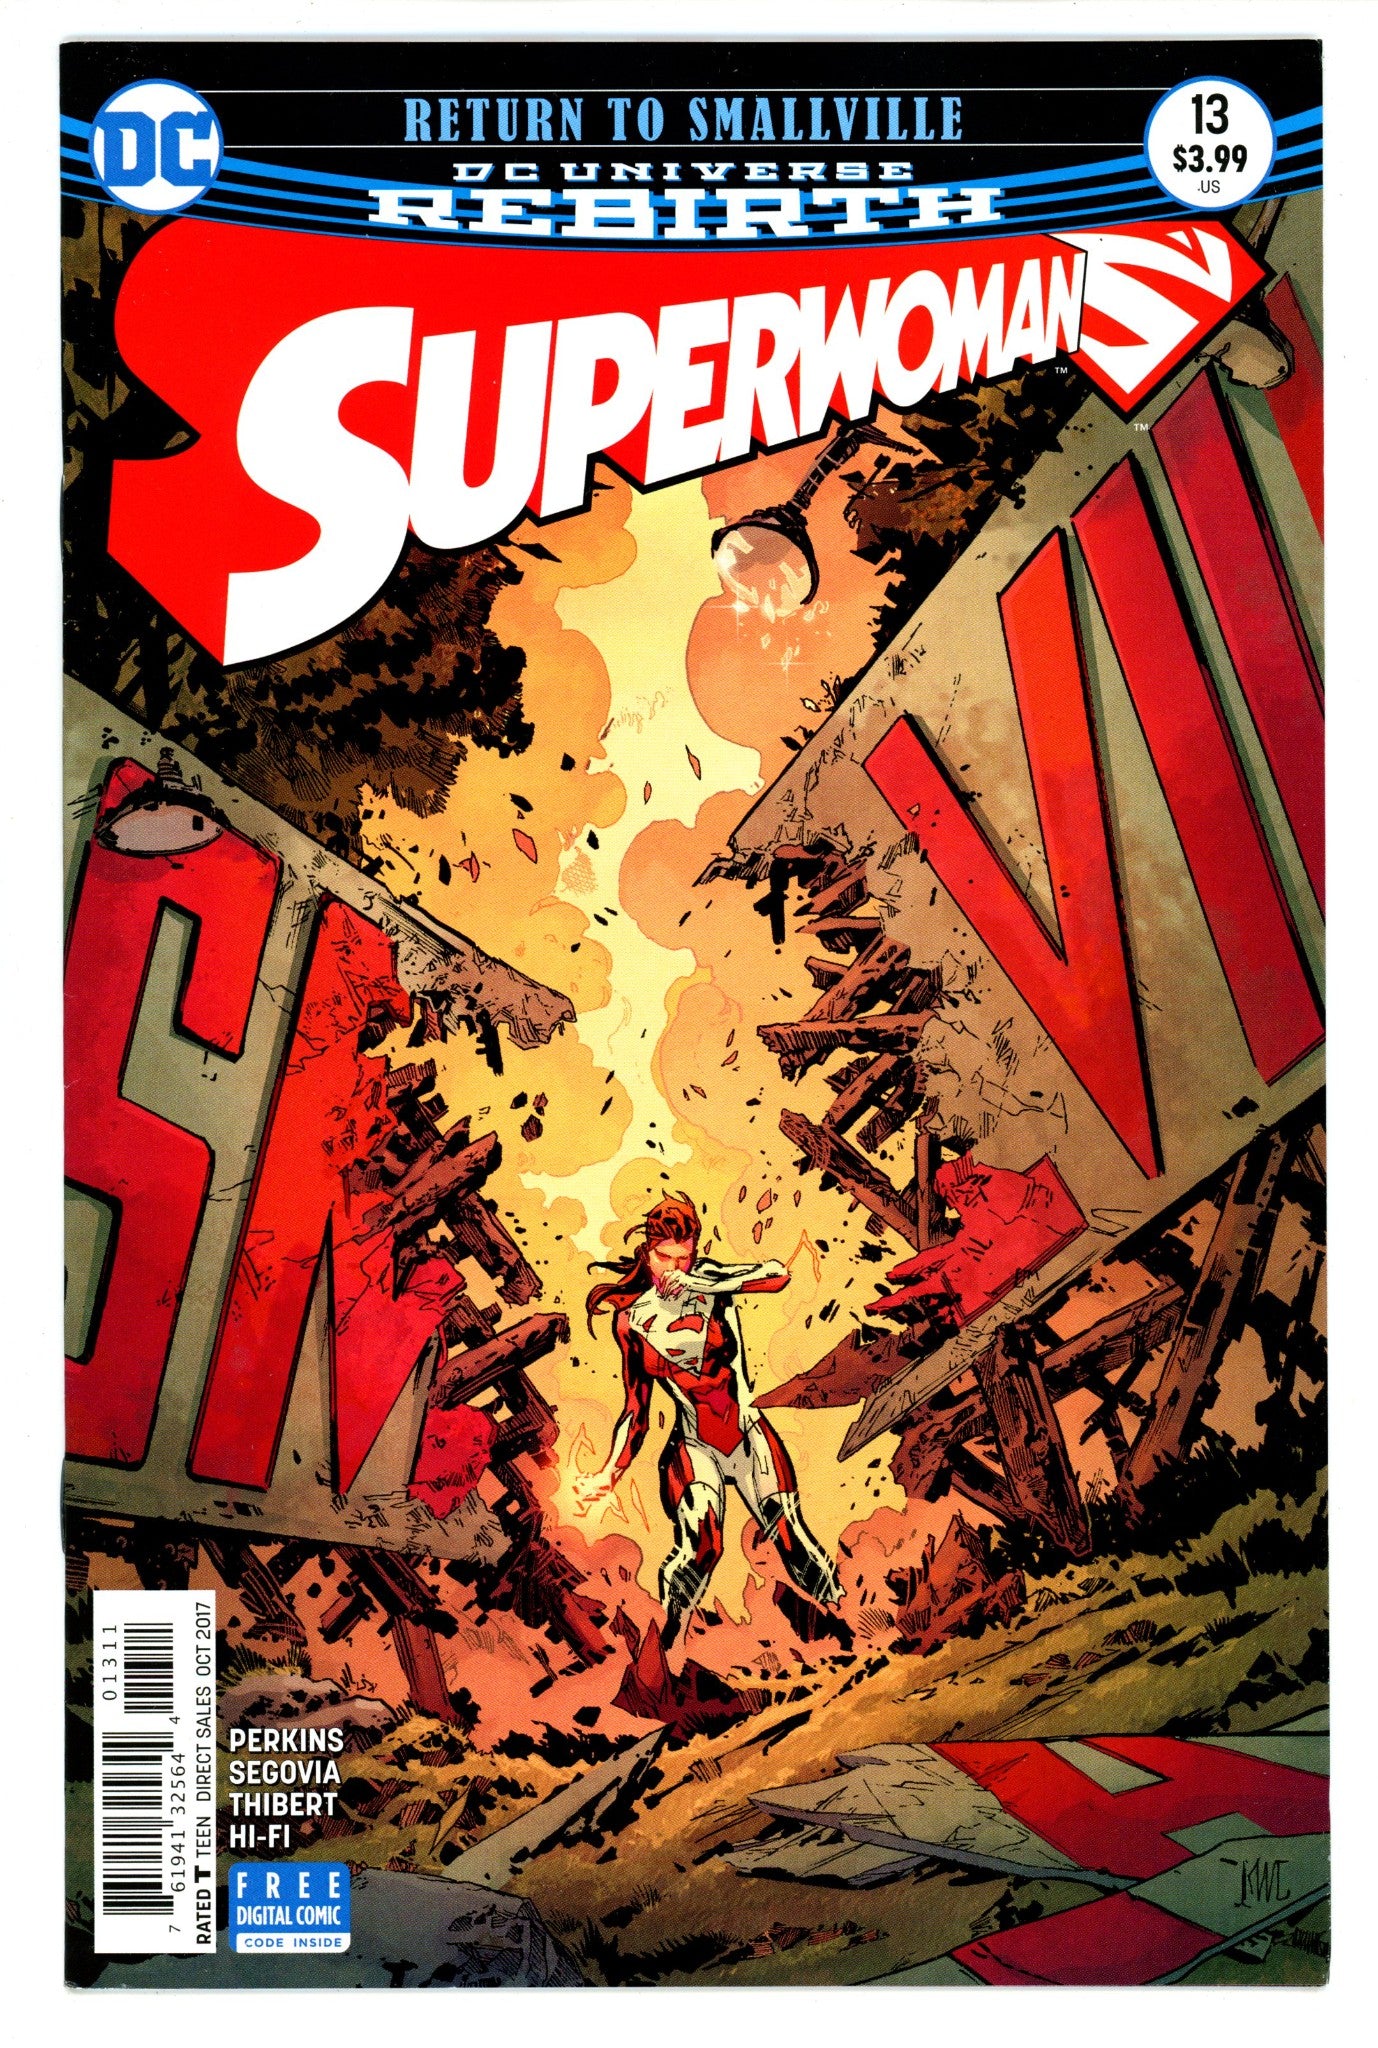 Superwoman Vol 1 13 High Grade (2017) 